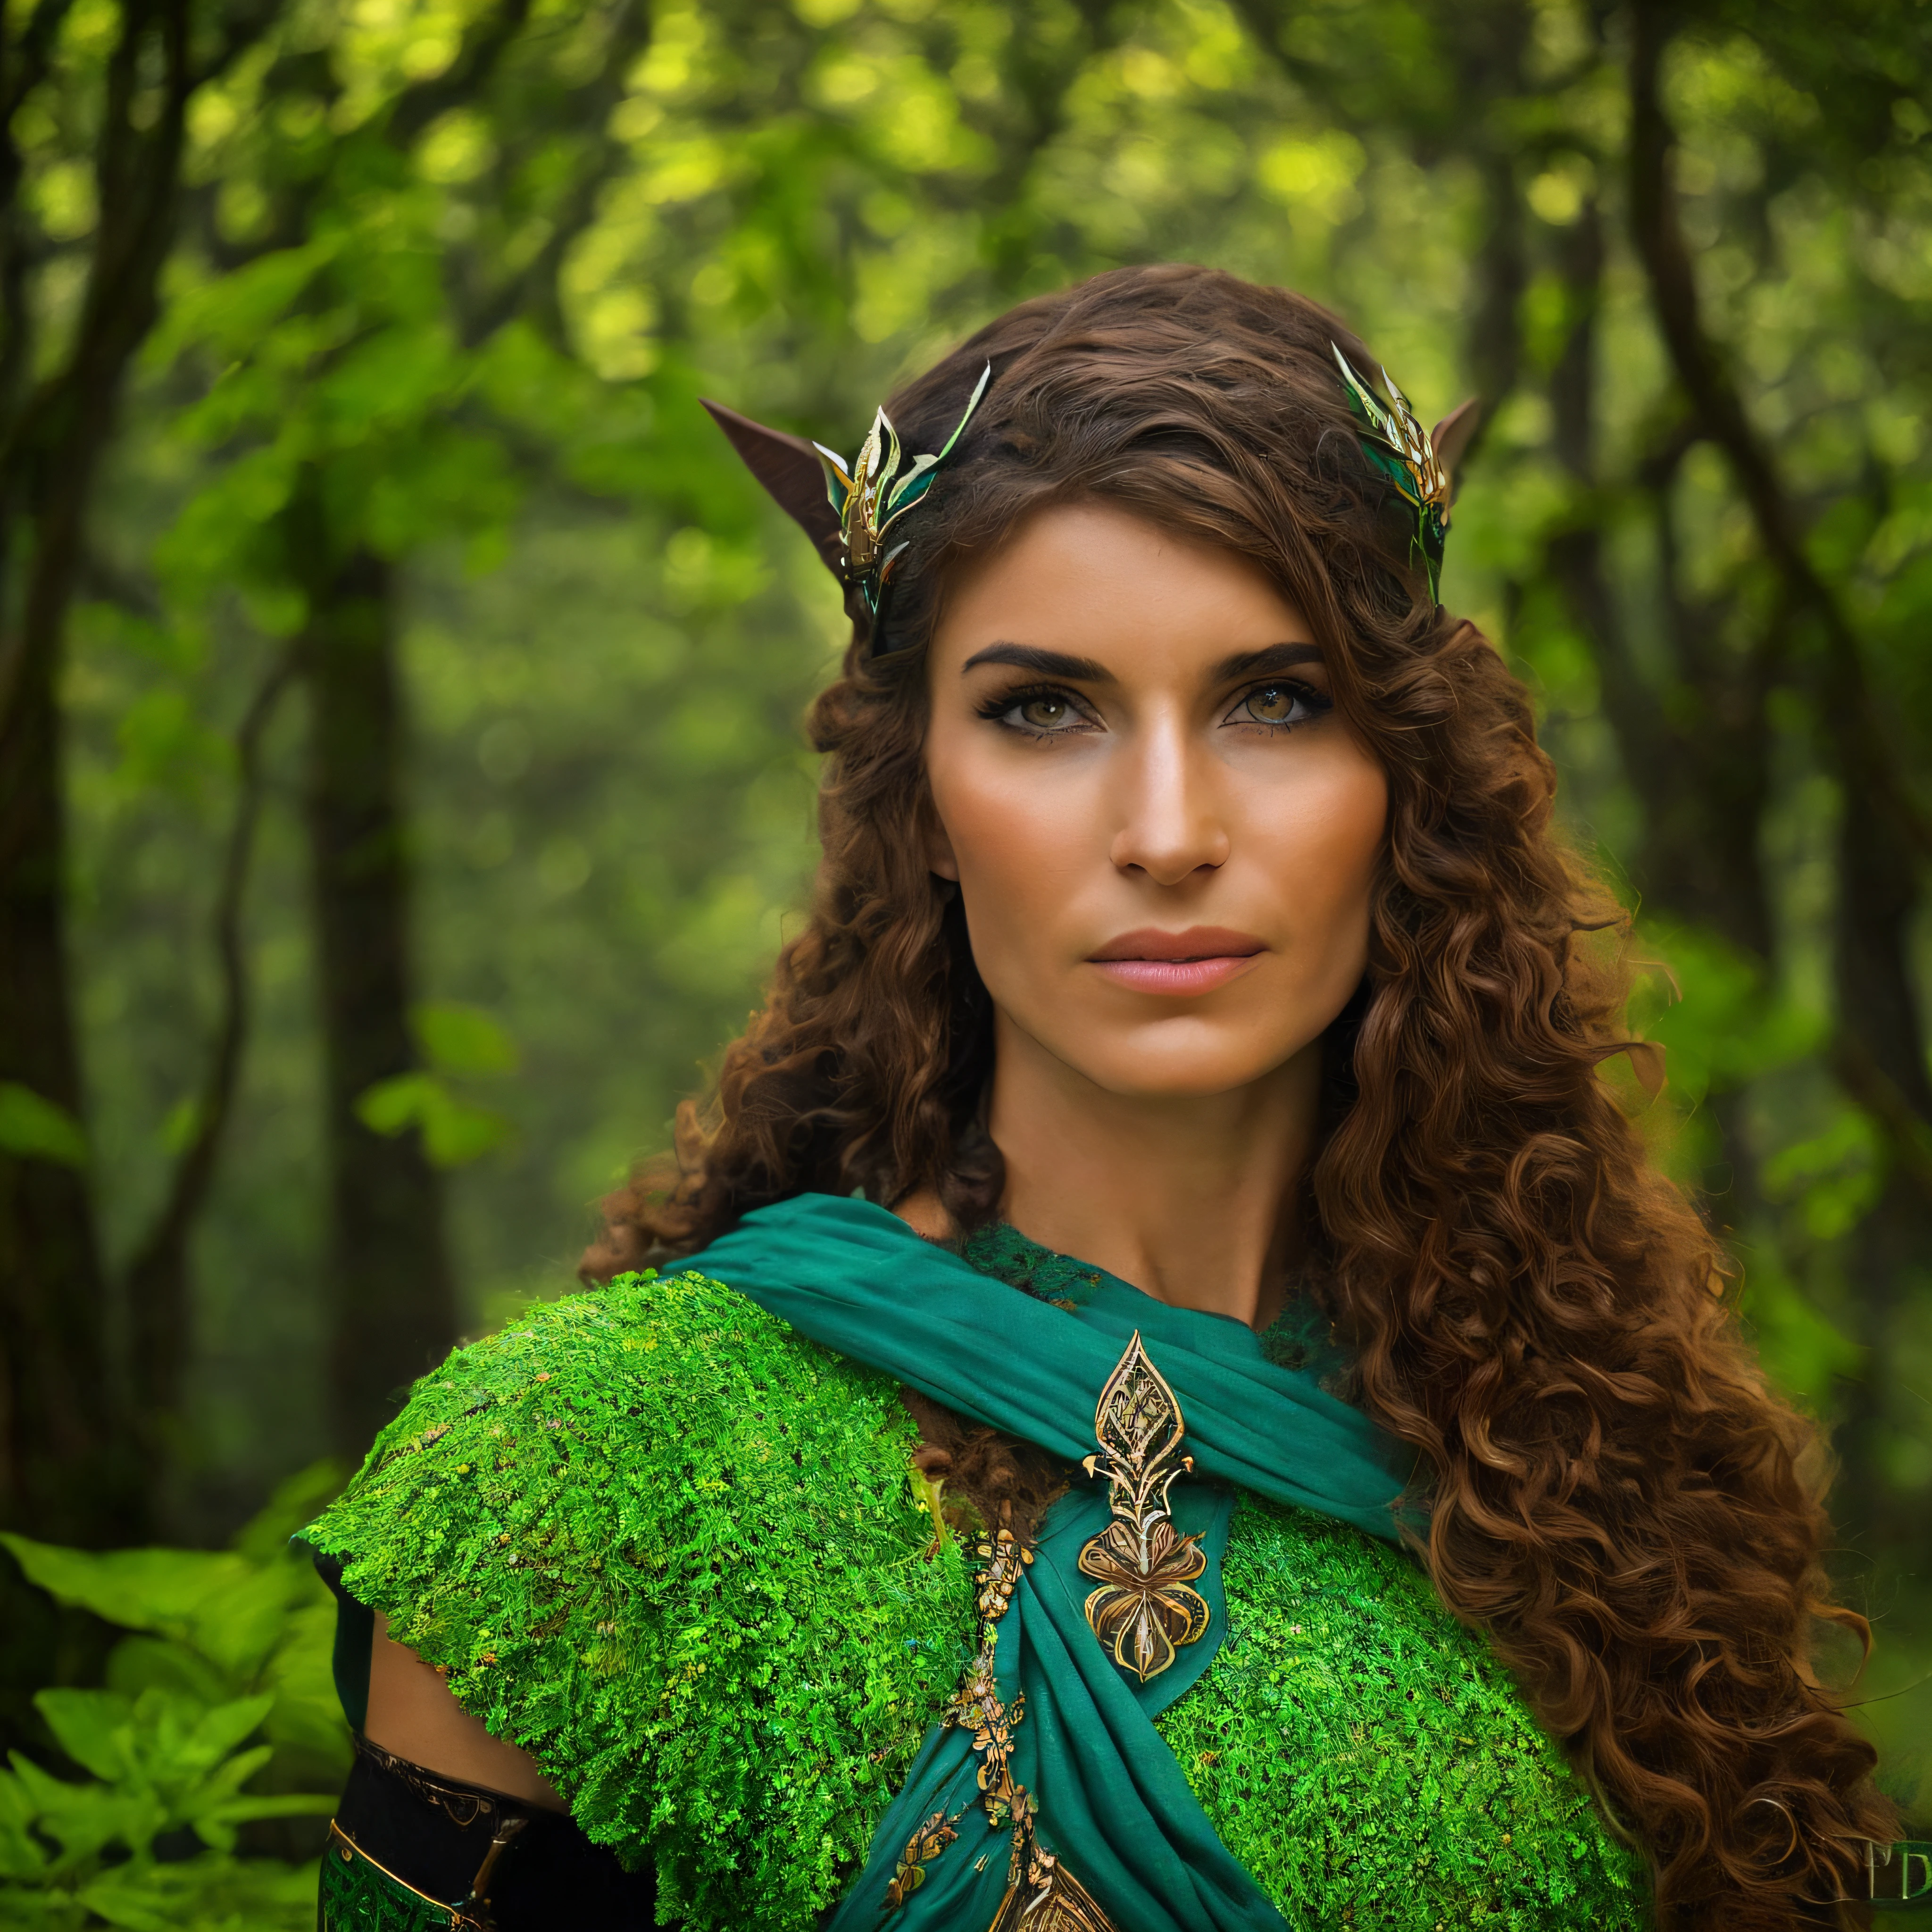 una mujer muy hermosa, sonriente, pequeño traje celta, un guerrero vikingo sentado cerca de un arbusto al amanecer en medio de un bosque, la vegetación es verde y las luces pasan a través de las hojas de los árboles, Una suave niebla cubre el ambiente., ropa negra, Tatuajes celtas por todo el cuerpo.. vistoso, bidimensional,